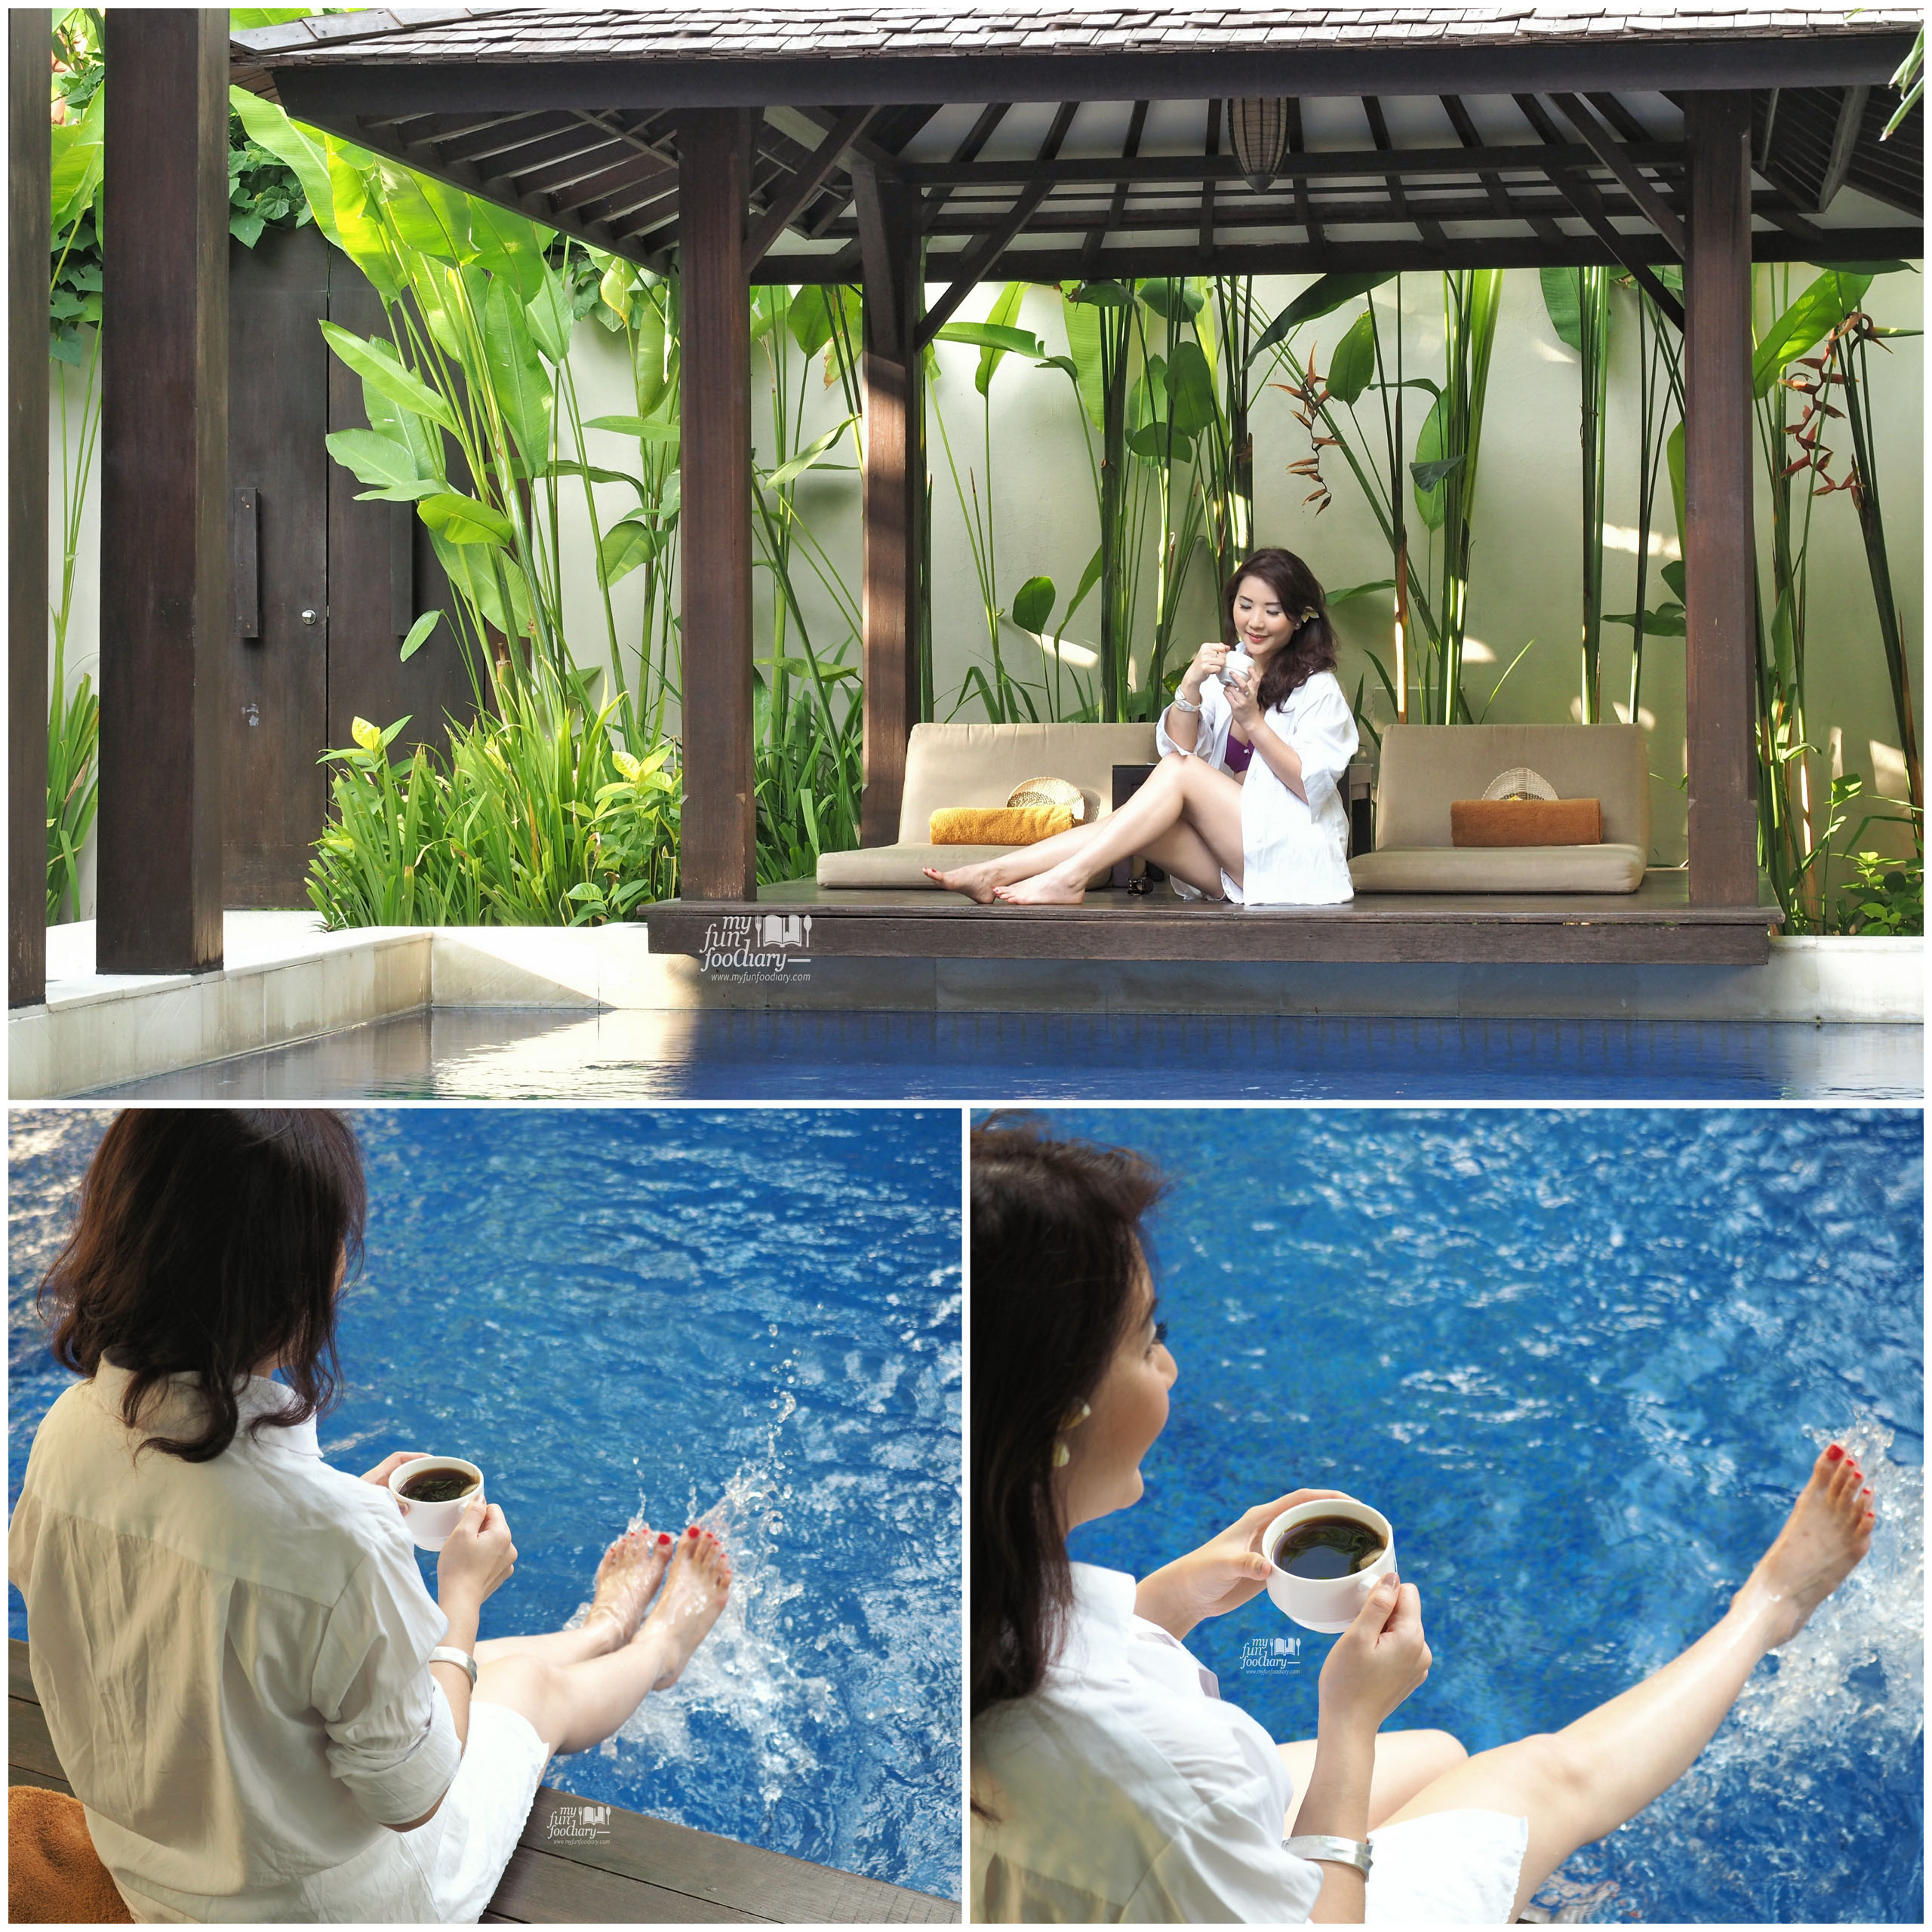 Playing water at my private pool - Villa De Daun Kuta Bali by Myfunfoodiary